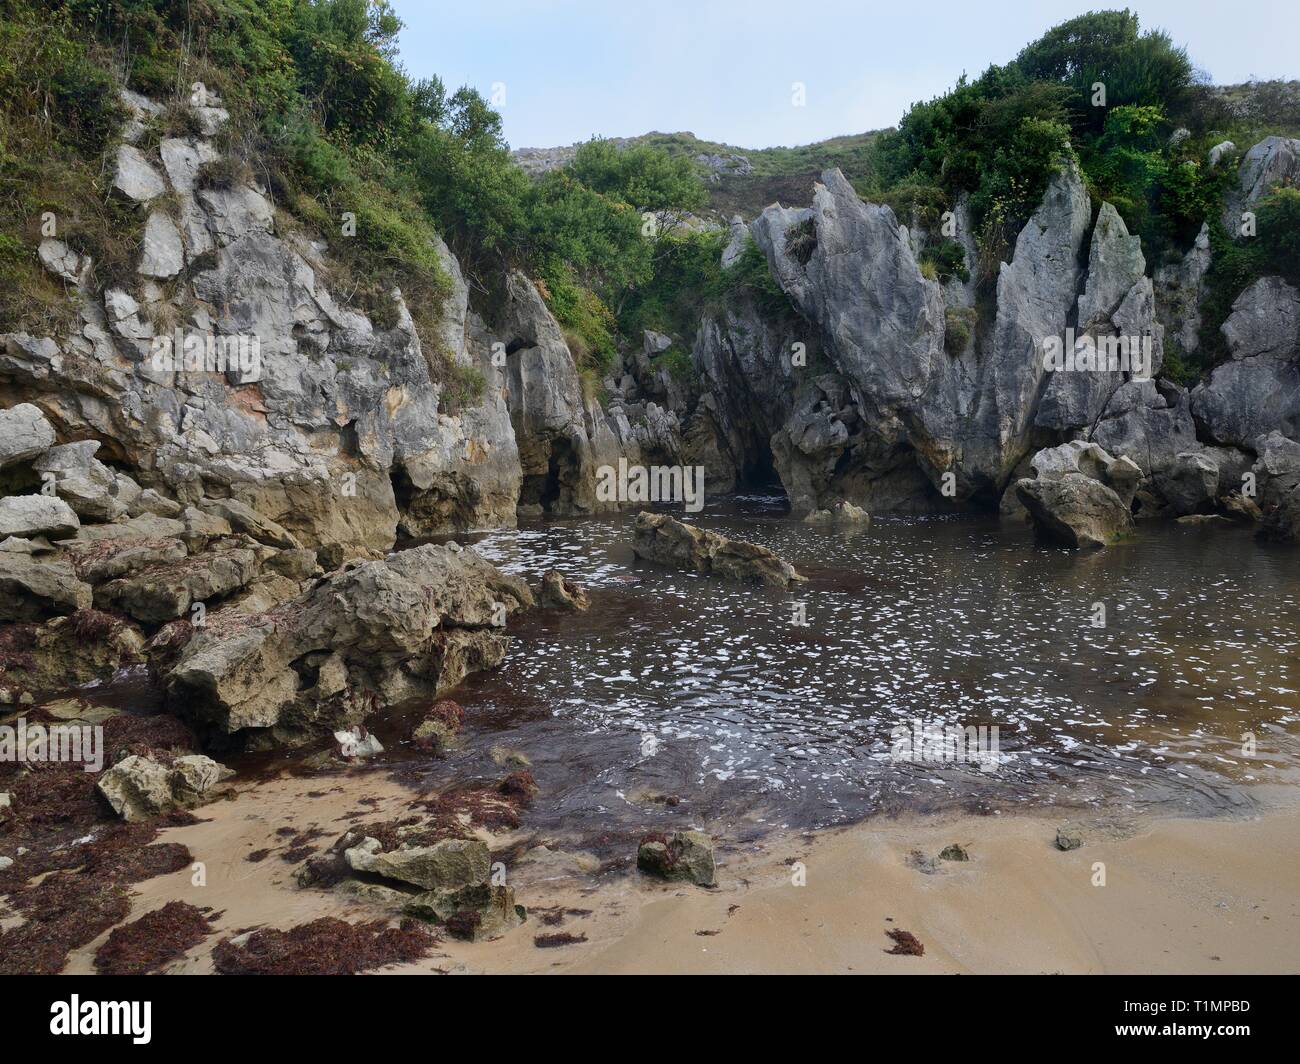 Spiaggia di Gulpiyuri, una spiaggia terrestre collegato alla costa 100m lontano dall'acqua di mare che fluisce attraverso i canali erosi in roccia calcarea, navate, Asturias, Spai Foto Stock